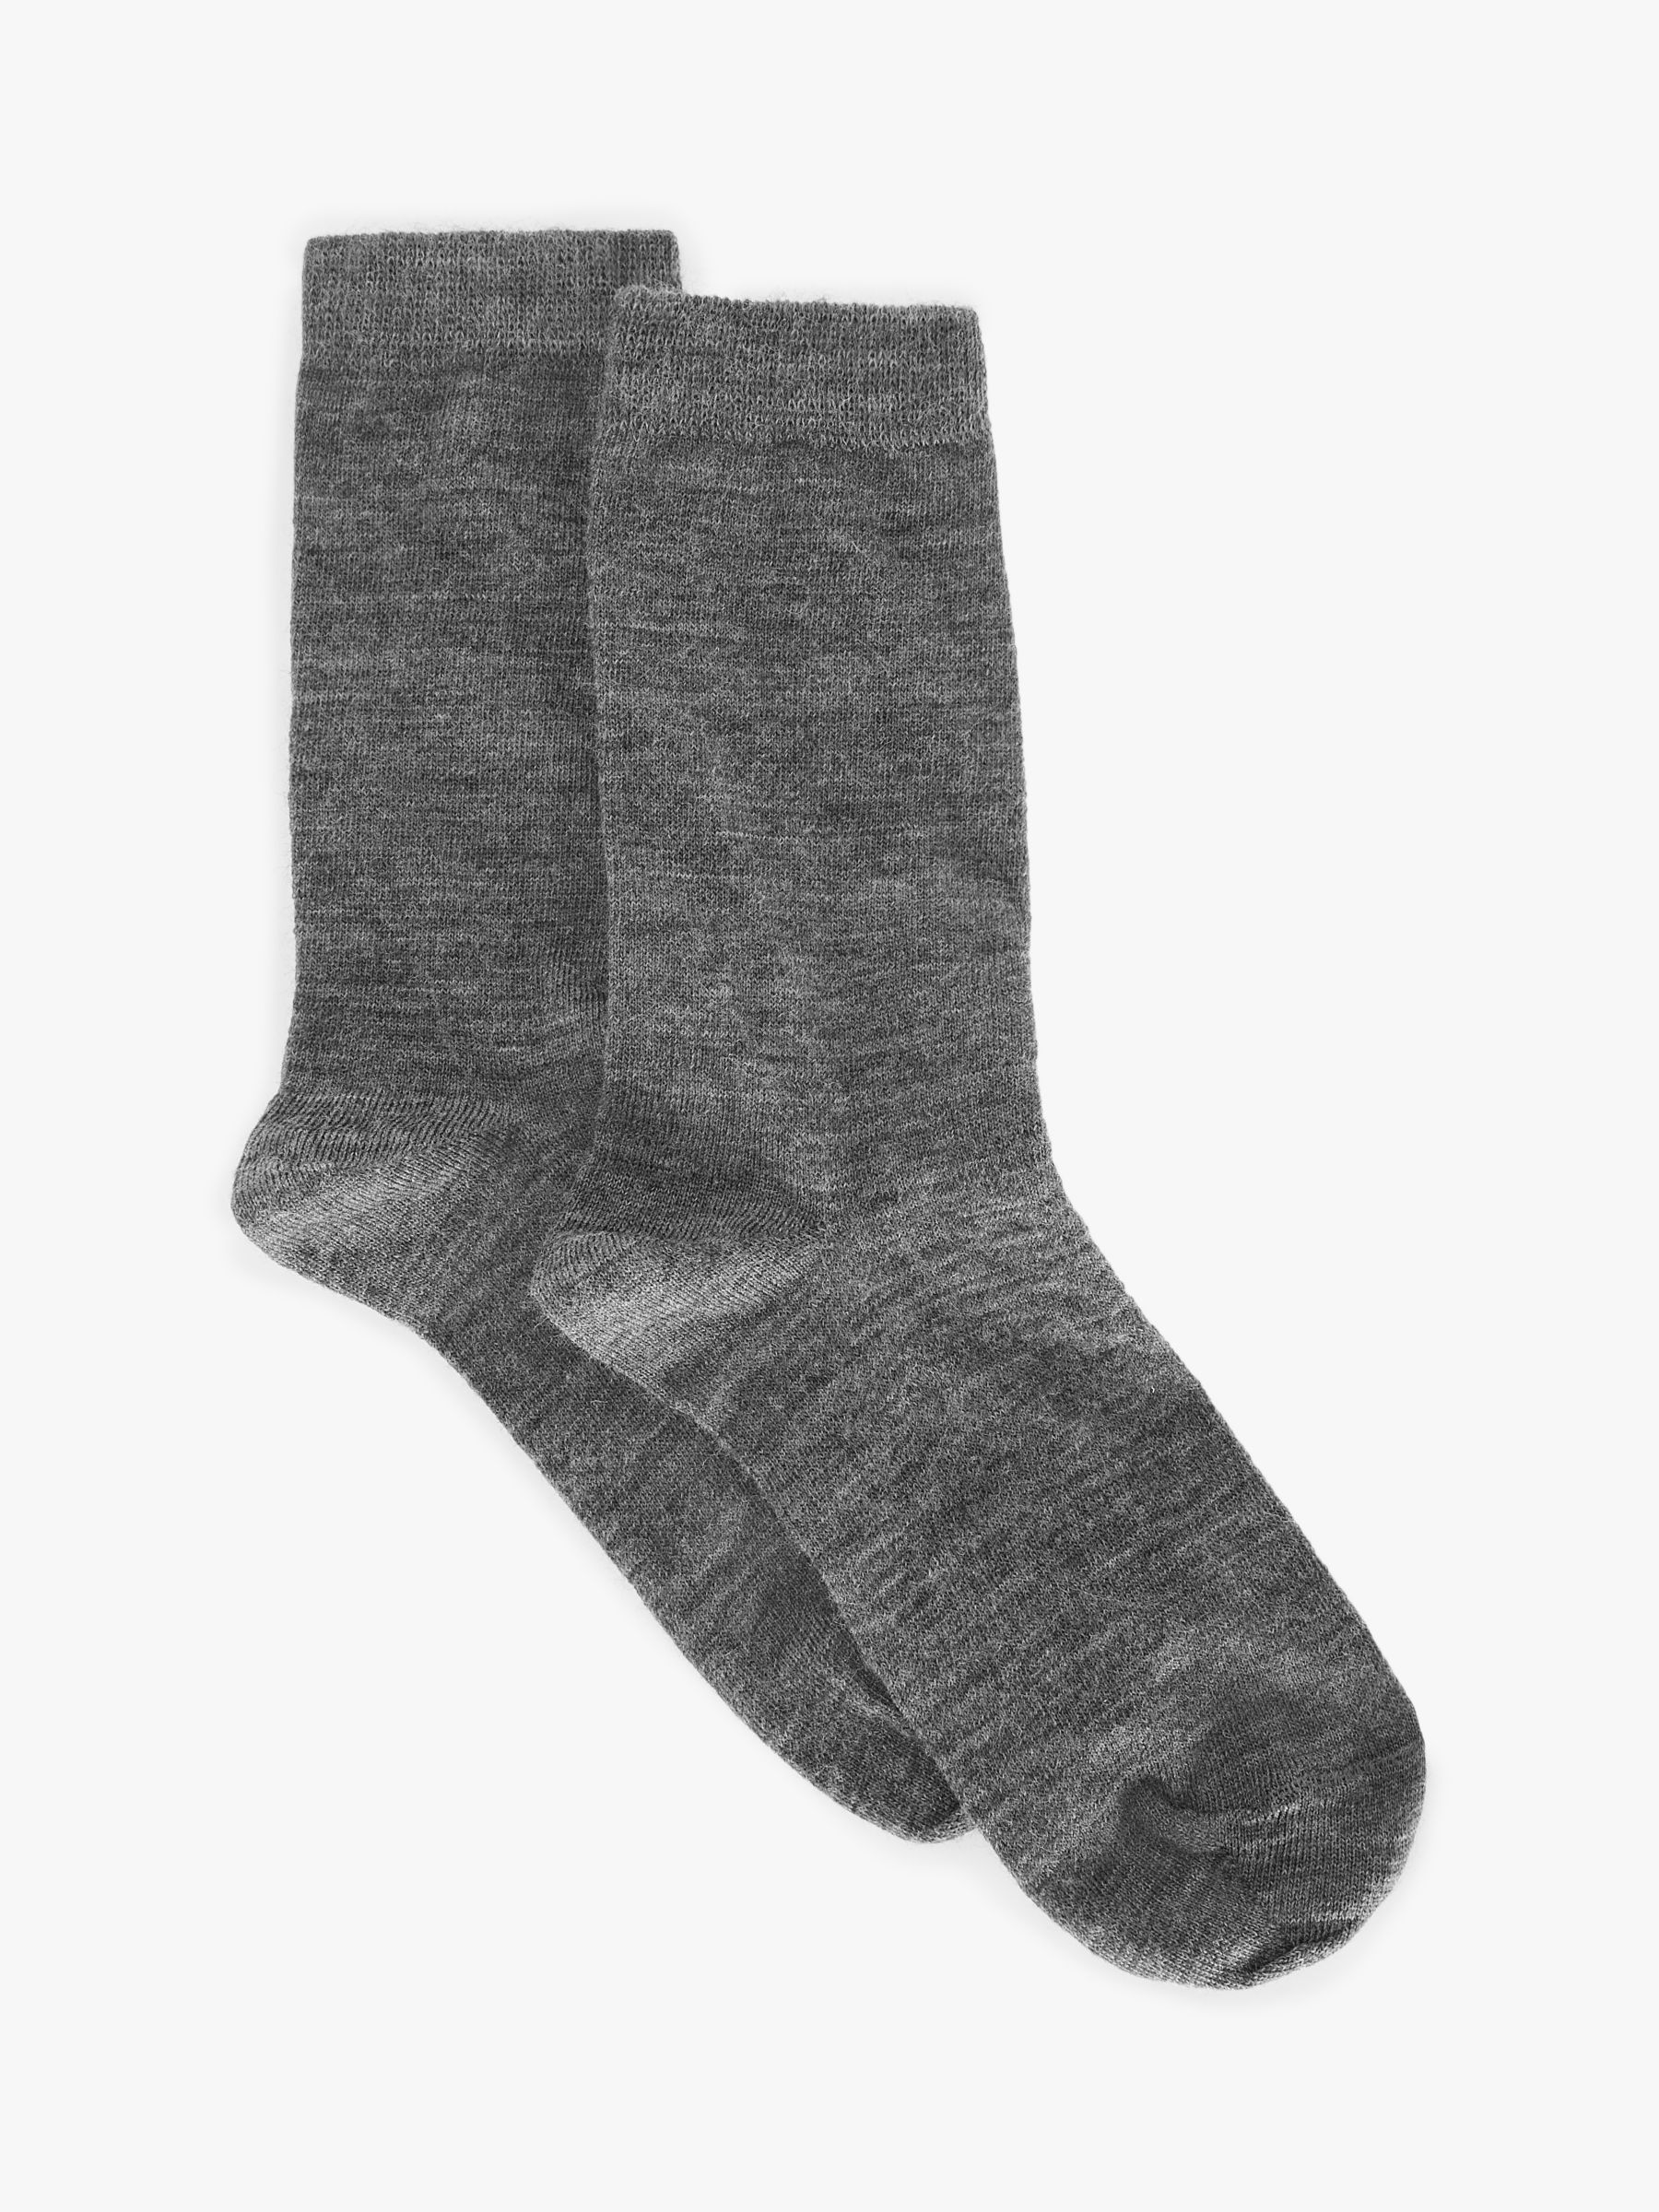 John Lewis Women's Merino Wool Mix Ankle Socks, Pack of 2, Grey at John ...